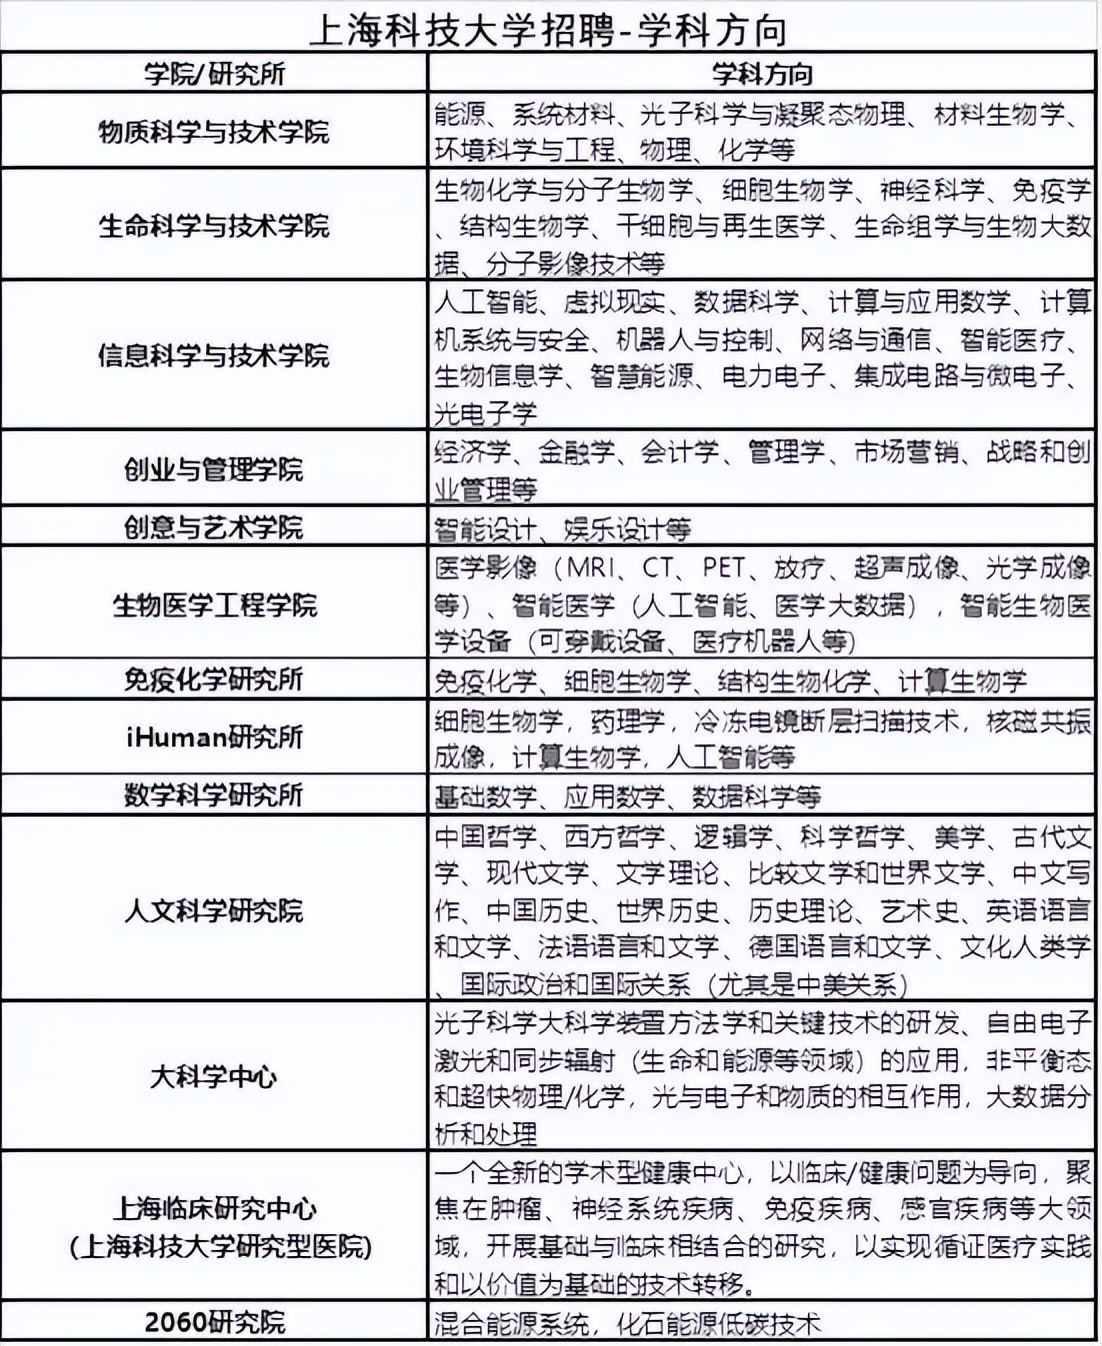 上海人才招聘网（各事业单位公开招聘和高校生网络招聘资讯）